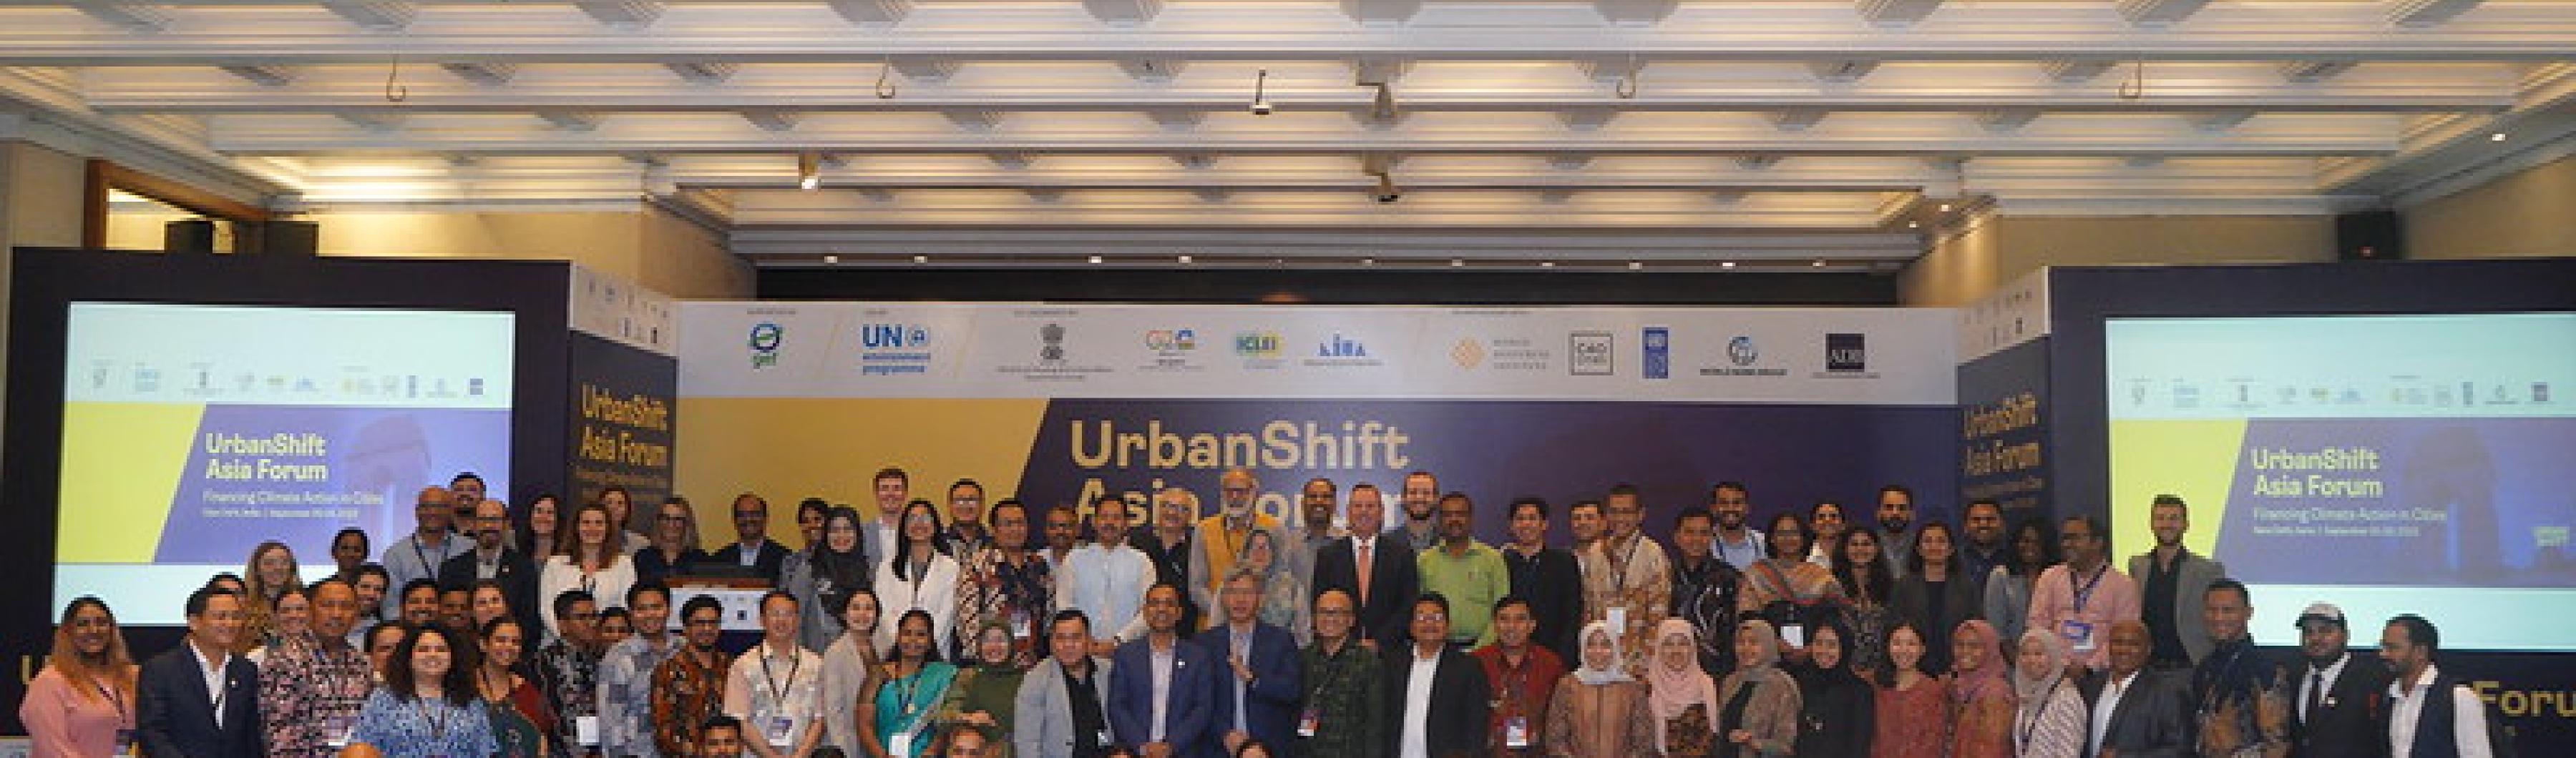 Los participantes en el Foro UrbanShift Asia se reúnen para una foto de grupo